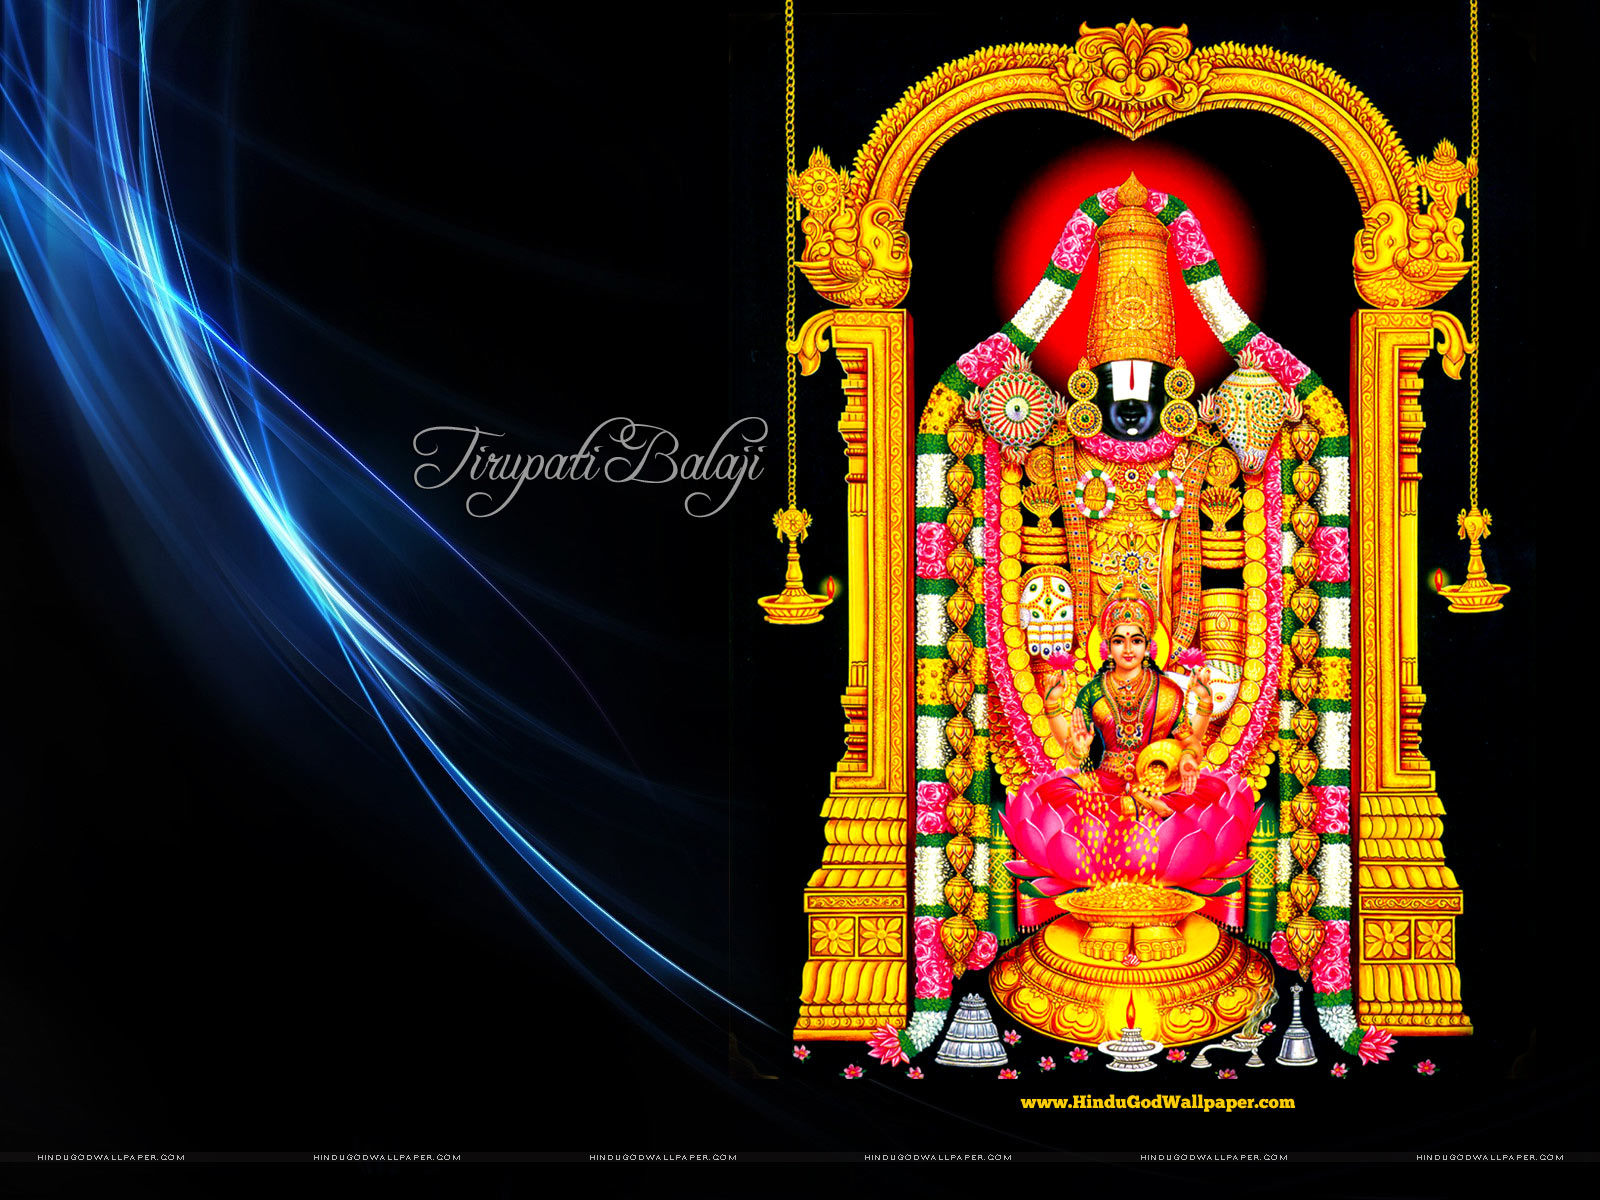 Mehandipur Balaji Wallpapers, HD Images & Photos Free Download